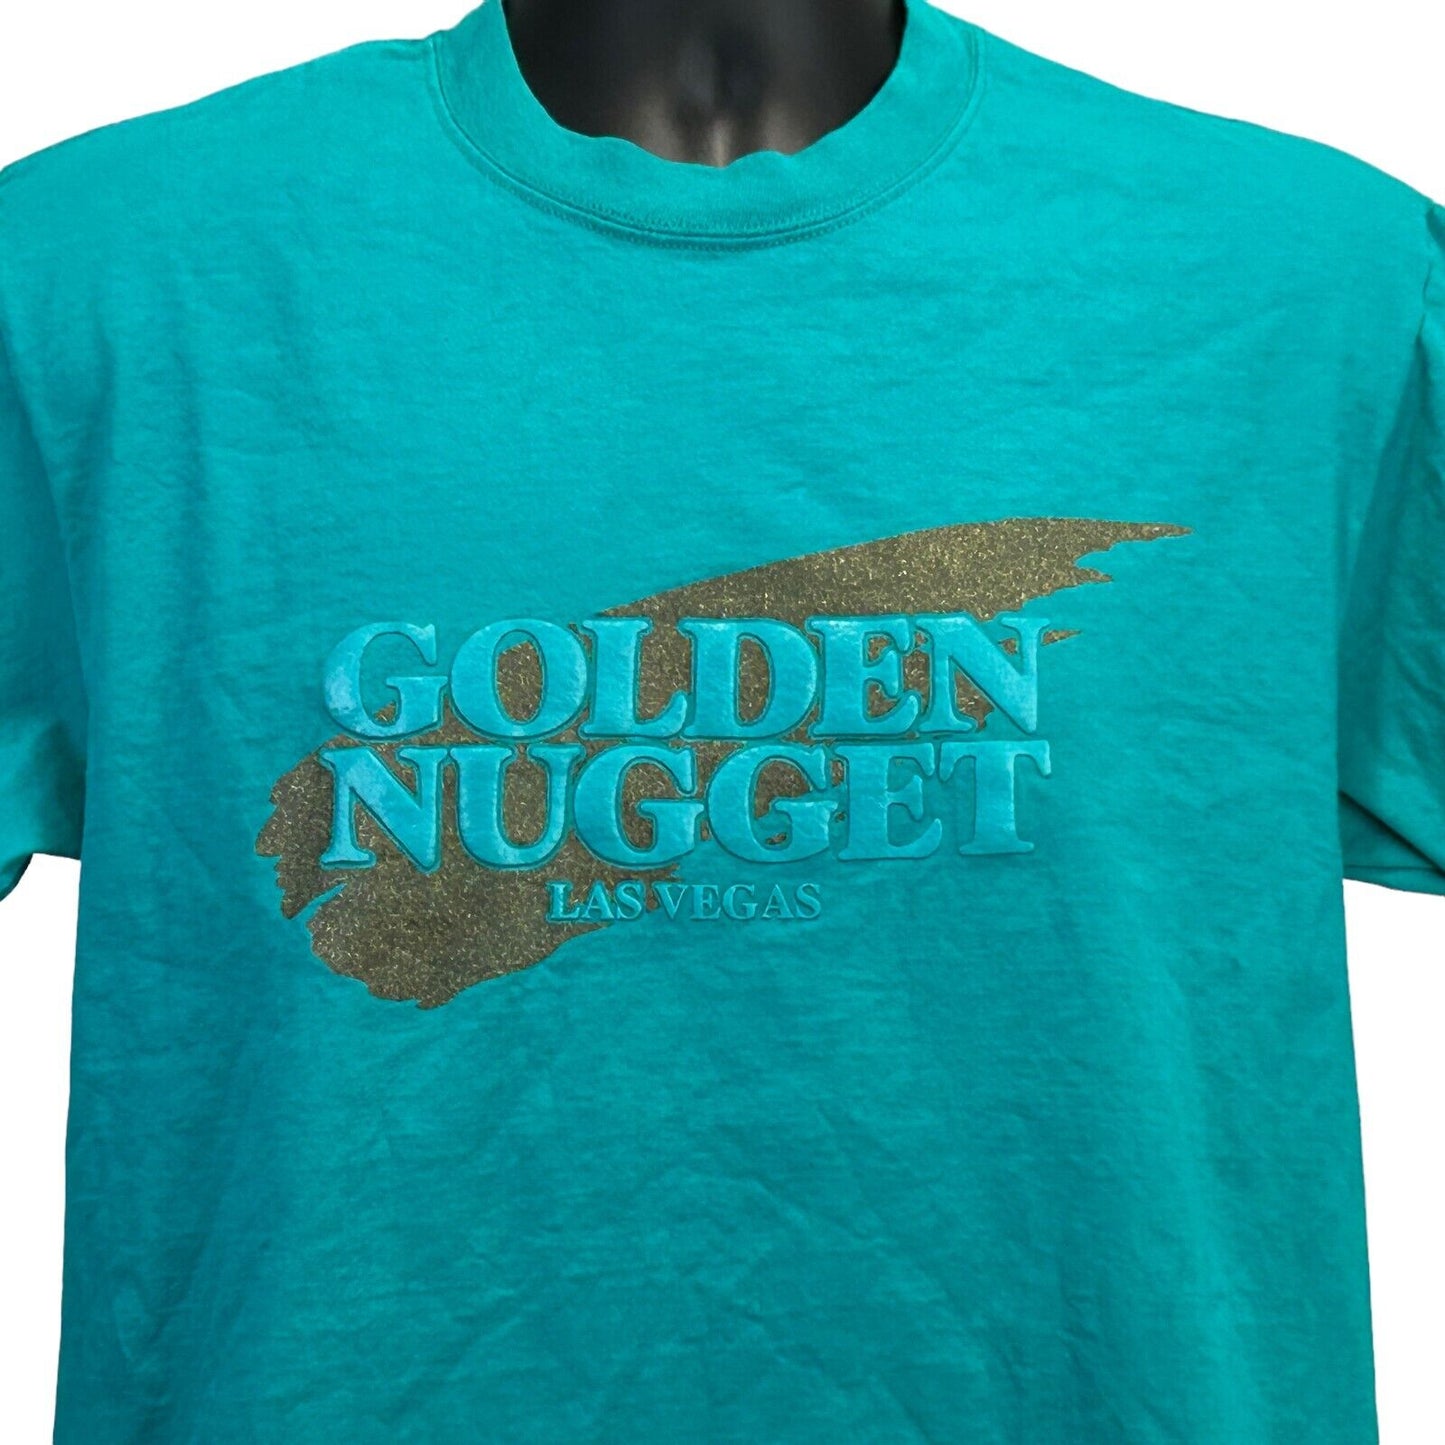 Golden Nugget Las Vegas Vintage 90s T Shirt Gambling Casino Made In USA Medium